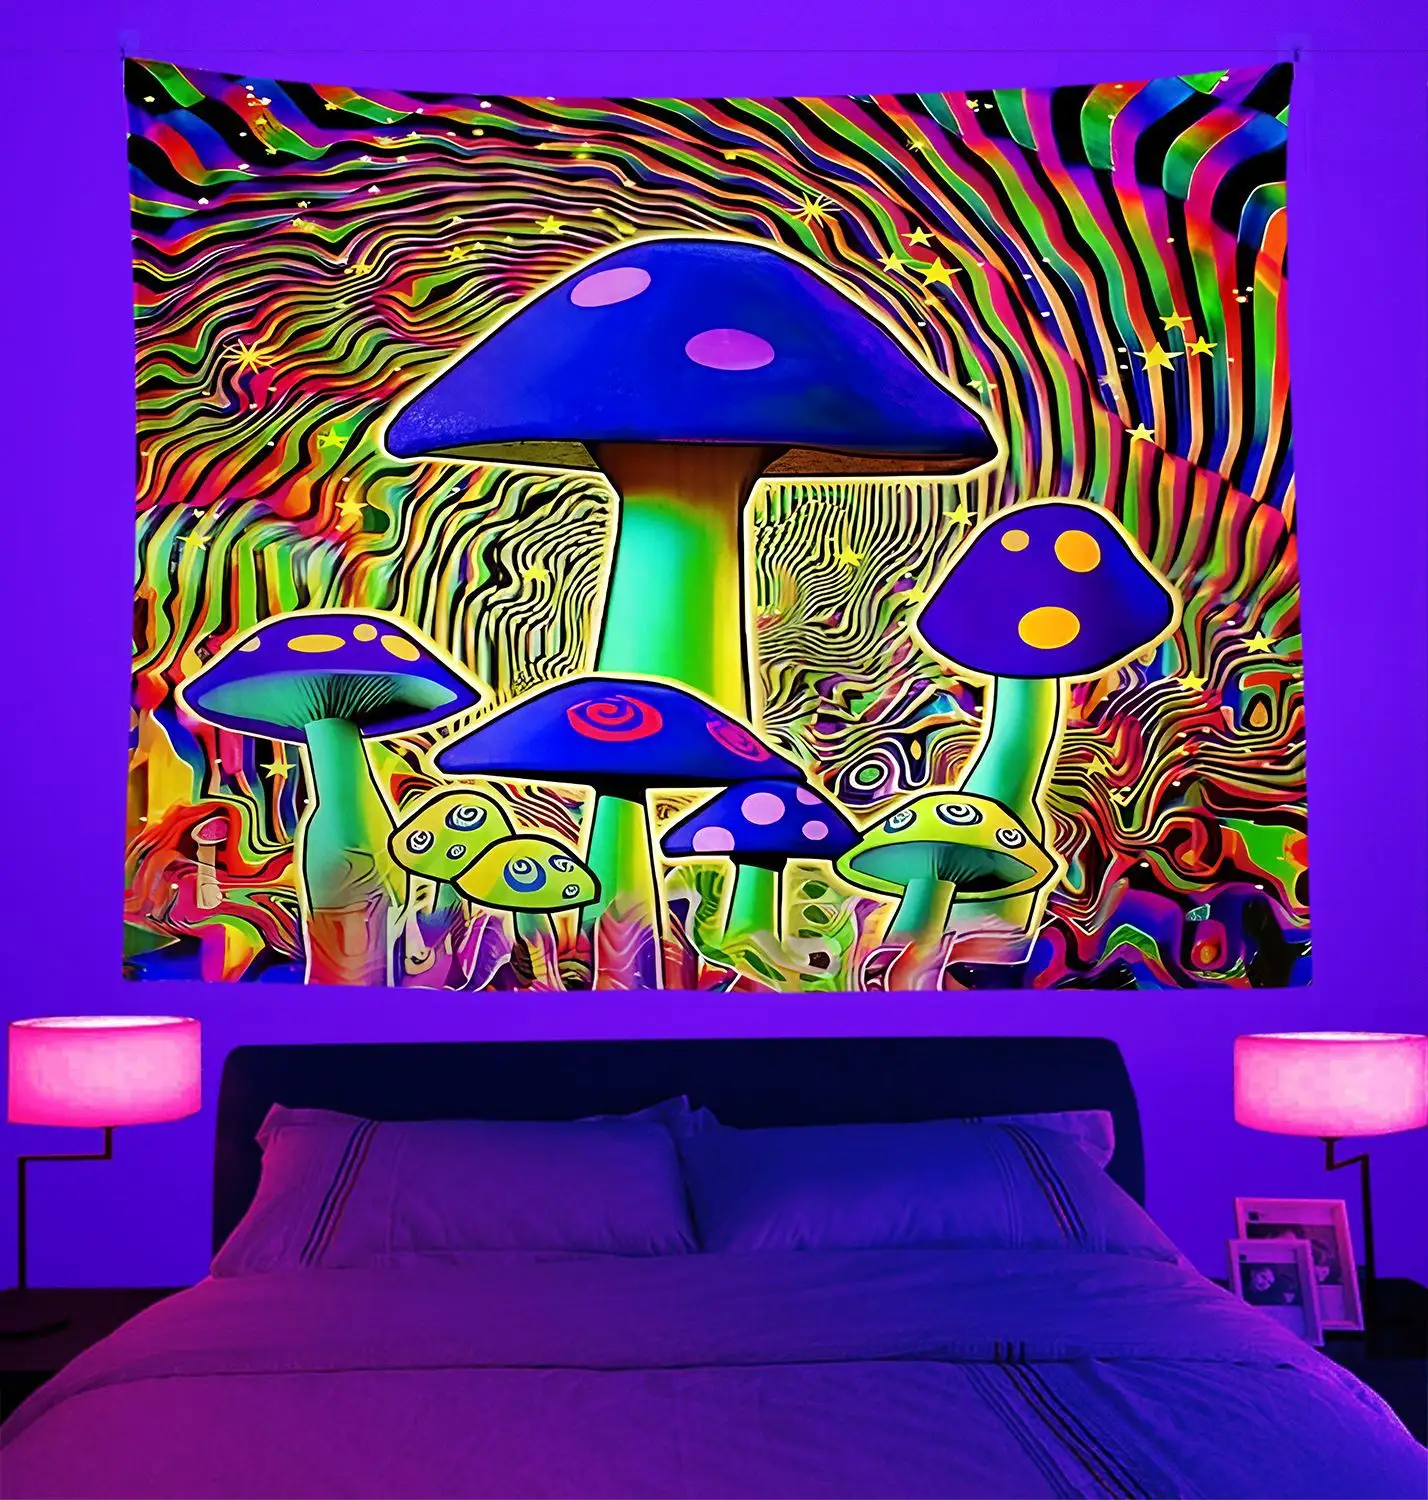 Tenture murale champignon Tapisserie Décoration de chambre Tapisserie murale esthétique Hippie lumineuse Tapisserie fluorescente psychédélique